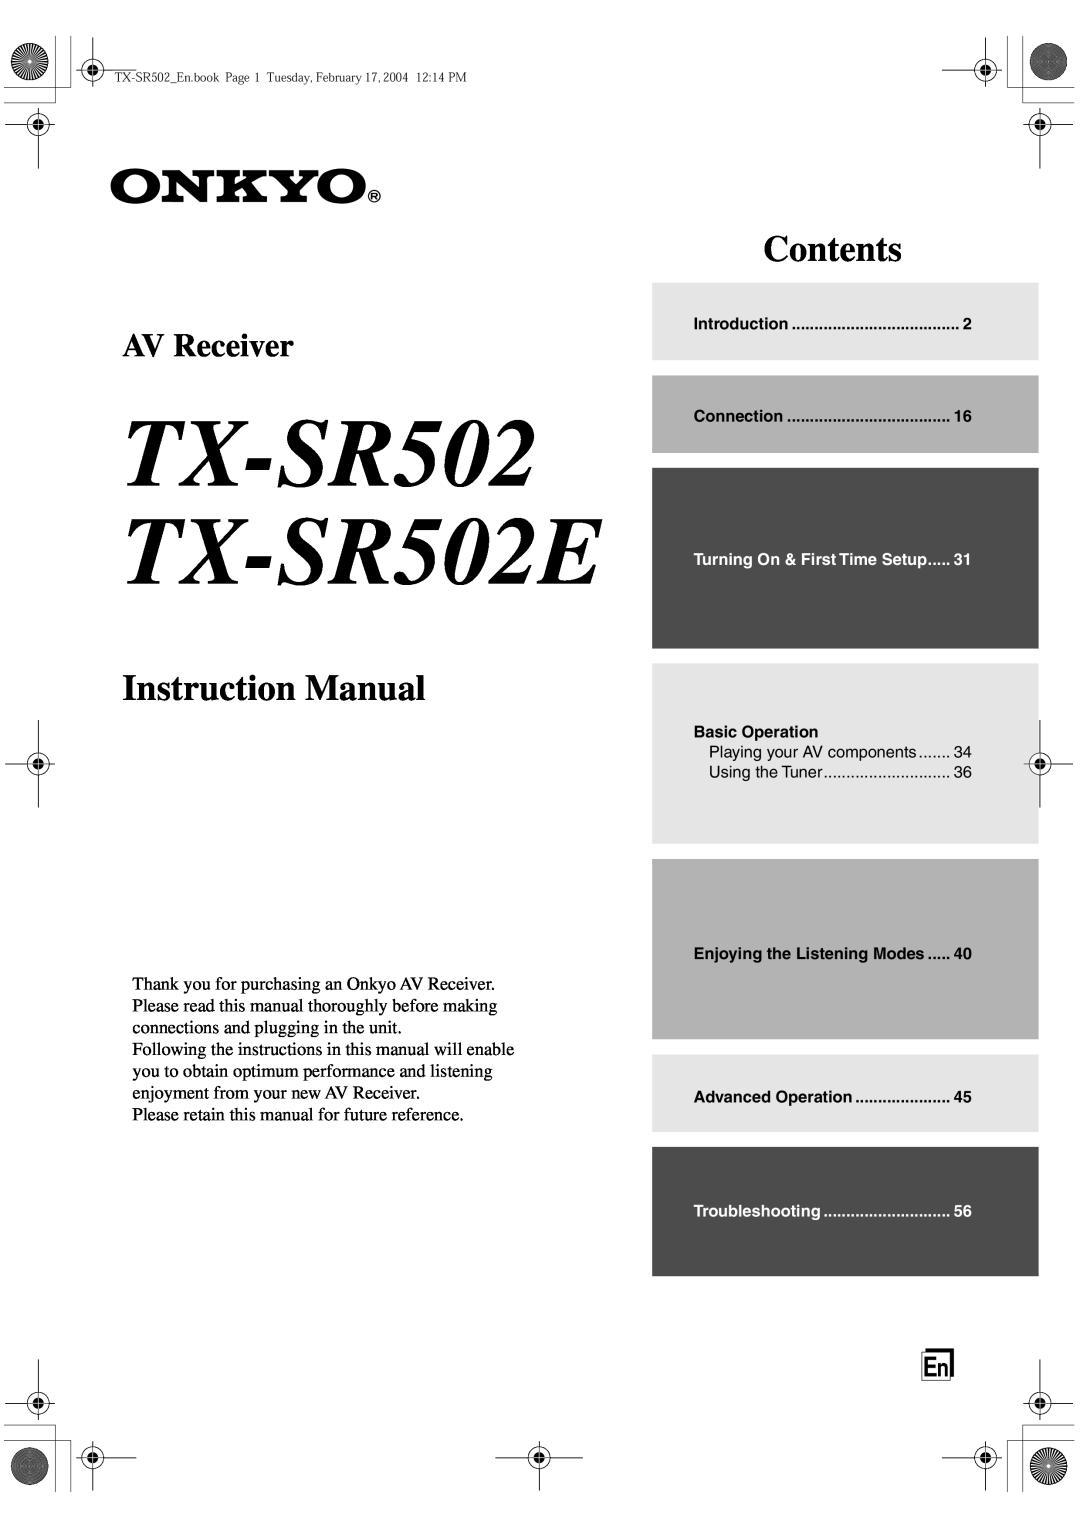 Onkyo instruction manual TX-SR502 TX-SR502E TX-SR8250, Instruction Manual, Contents, AV Receiver 